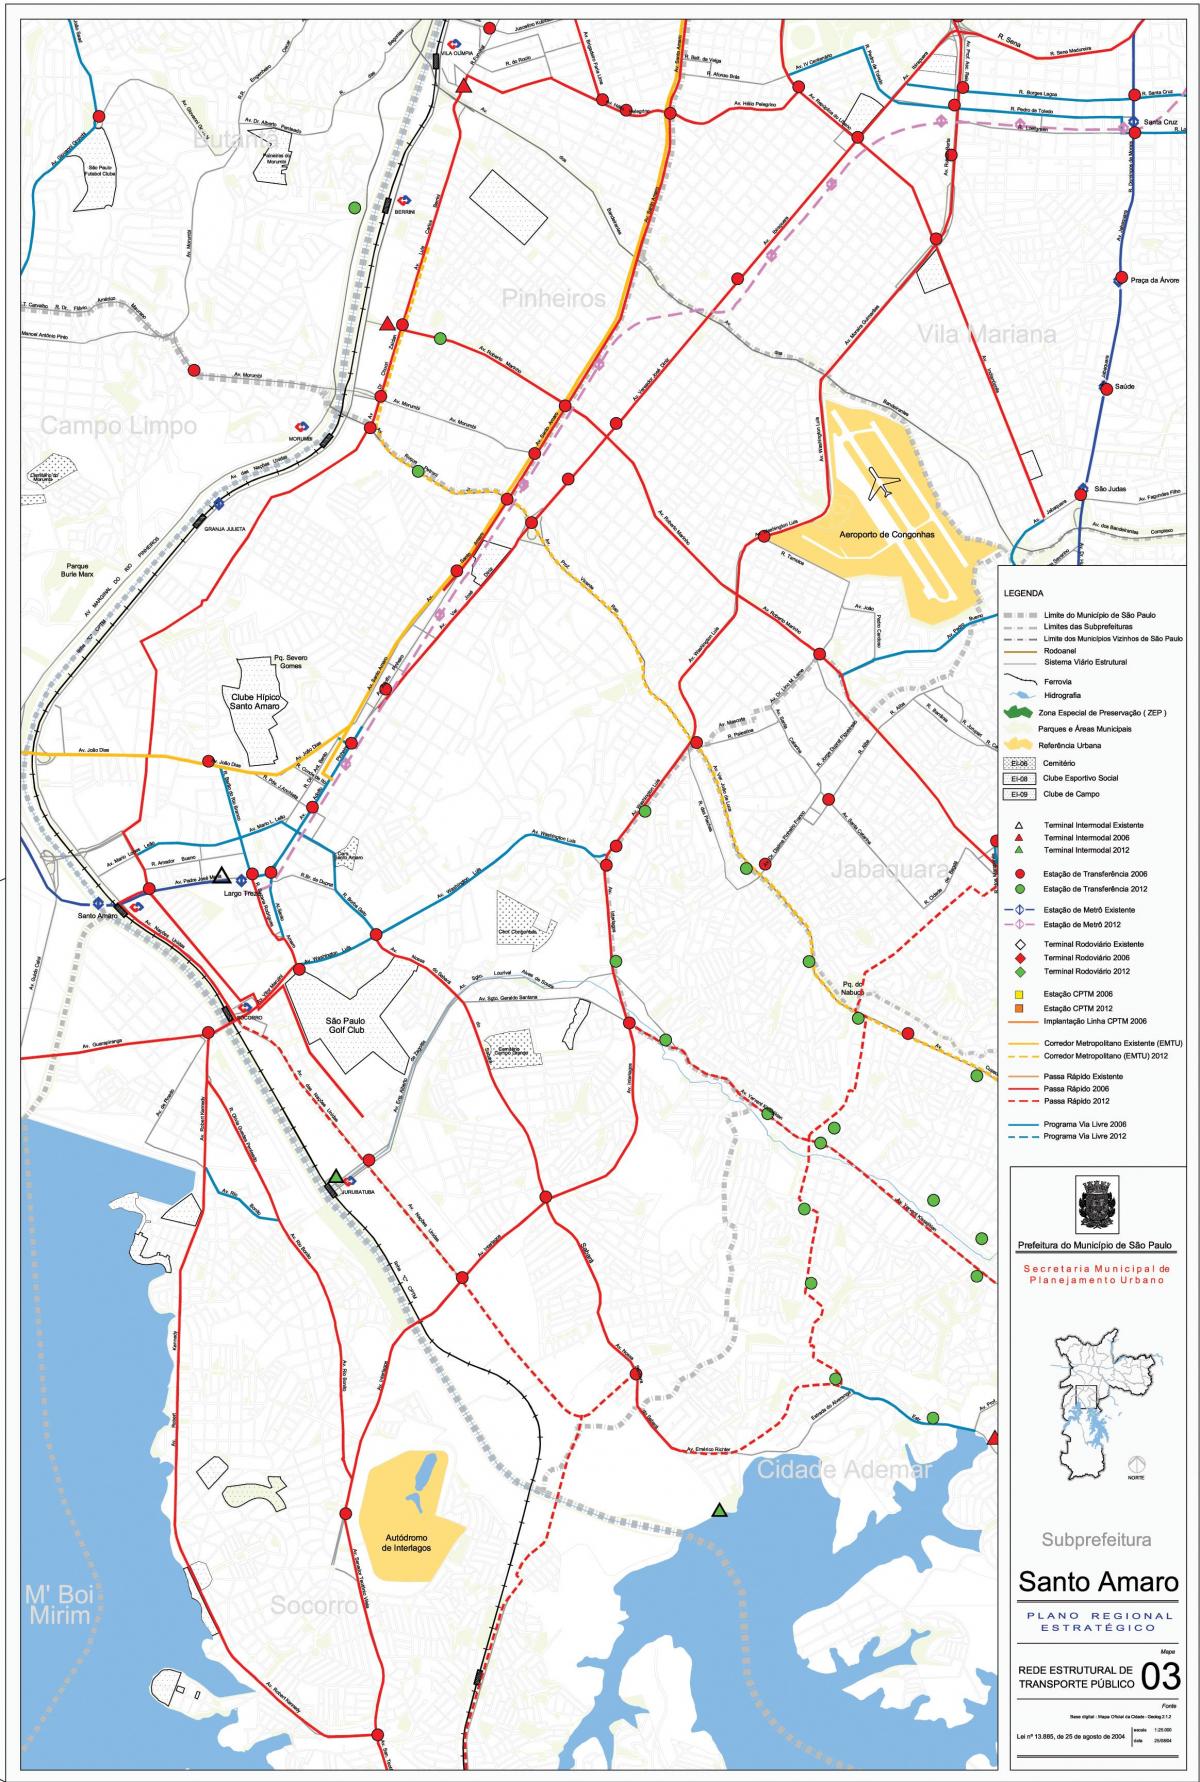 Mapa de Santo Amaro São Paulo - transport Públic